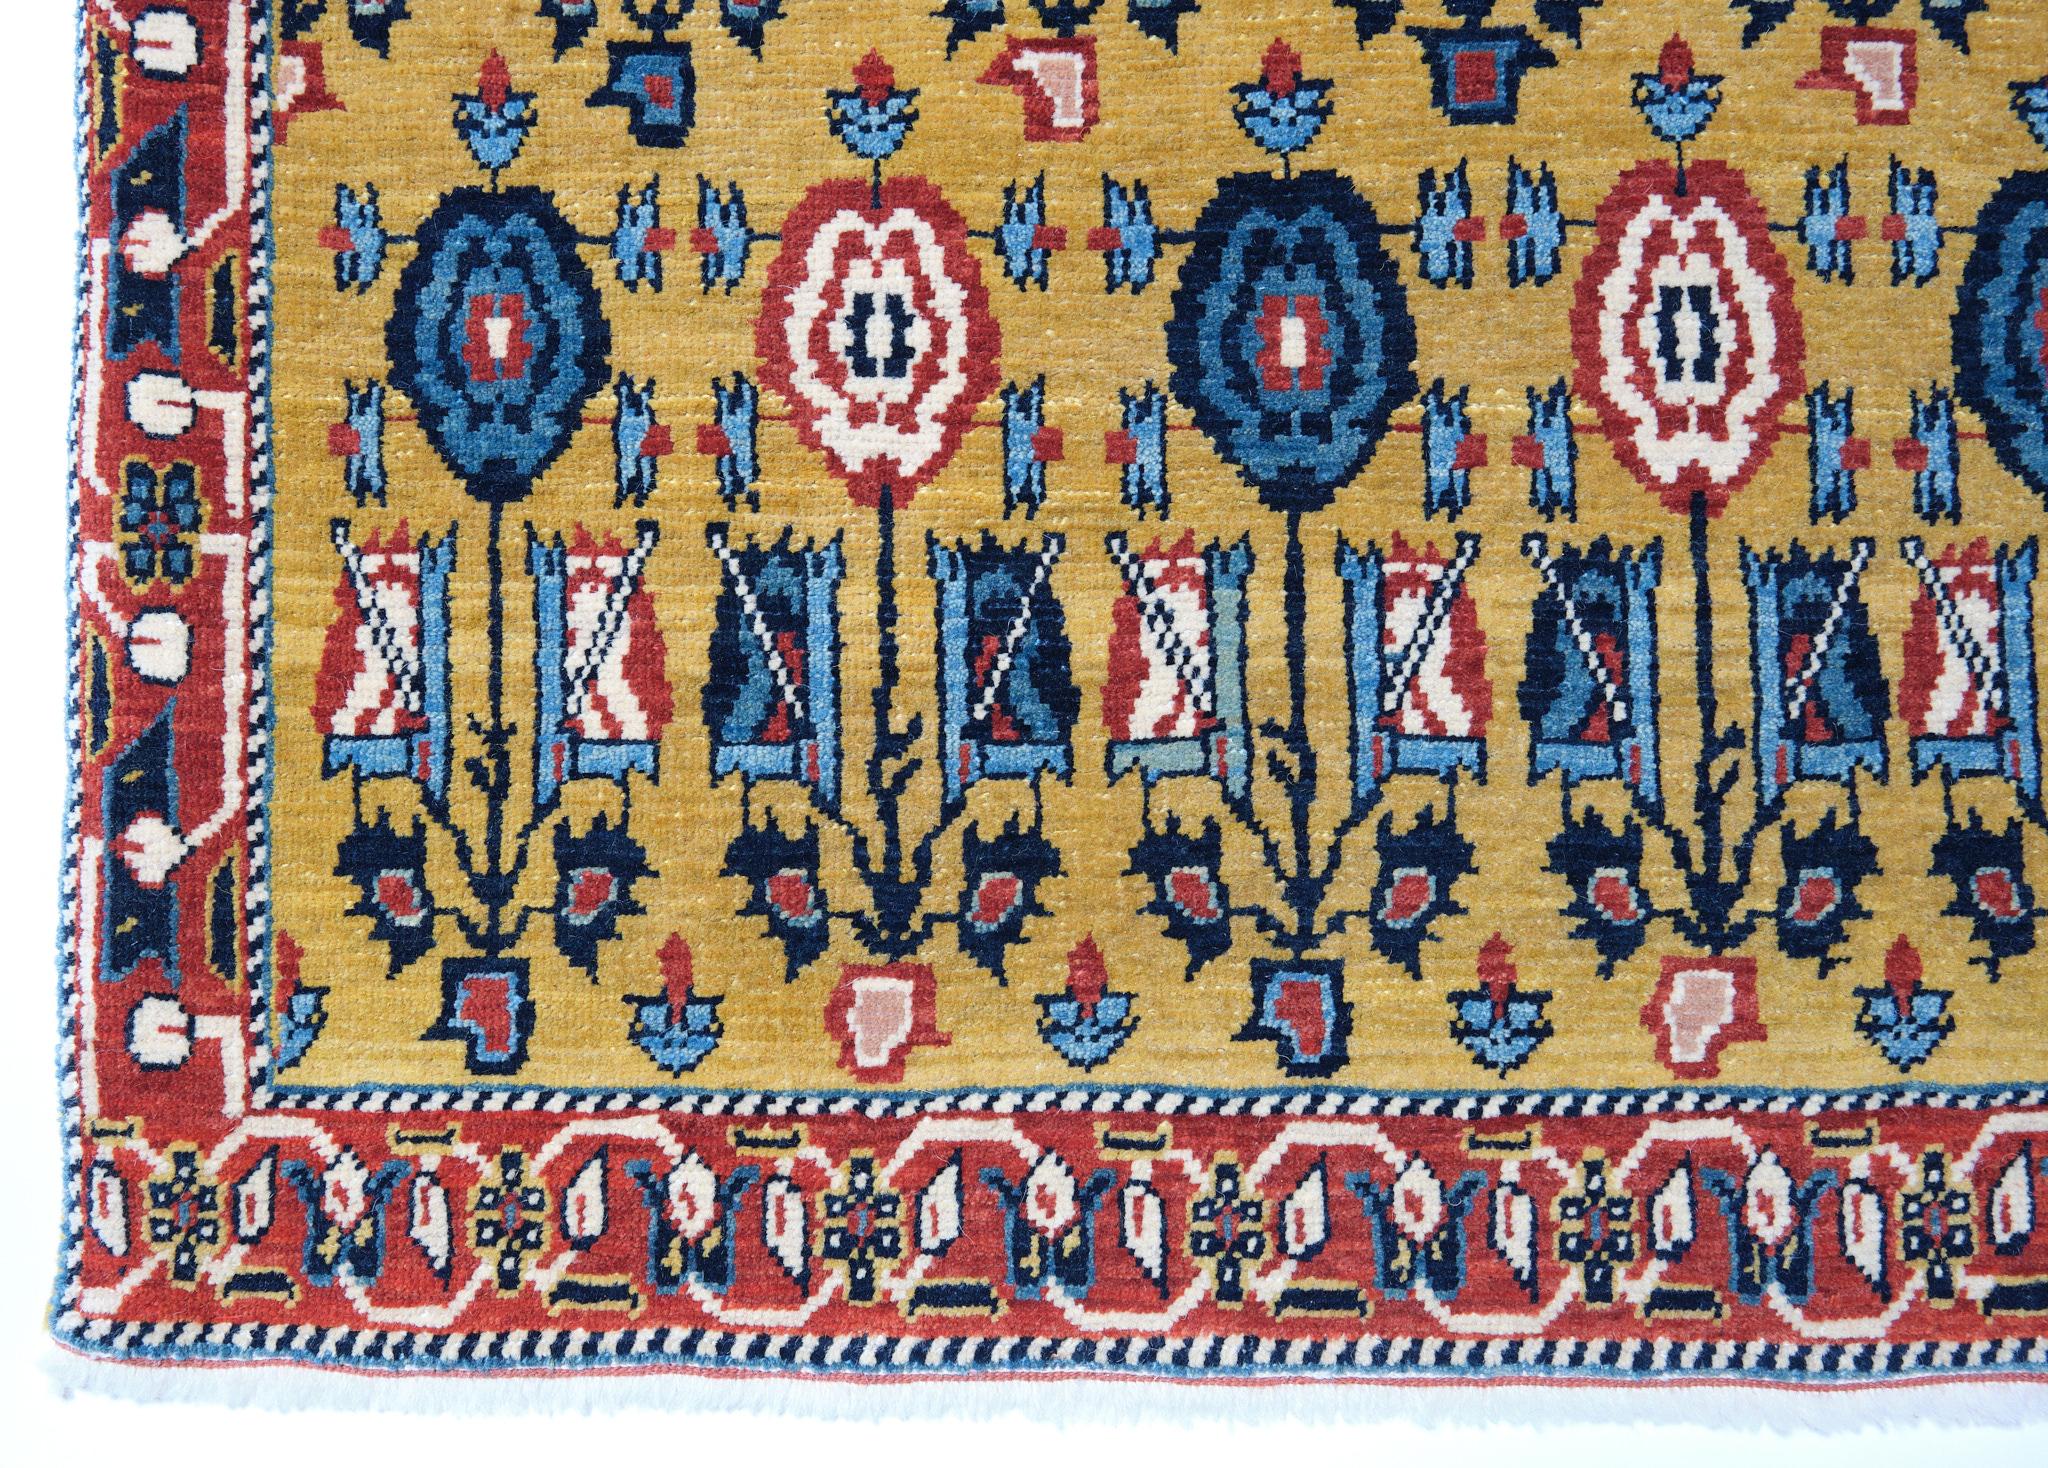 Die Quelle des Teppichs stammt aus dem Buch Antique Rugs of Kurdistan A Historical Legacy of Woven Art, James D. Burns, 2002 nr.28. Dies ist ein exklusives Beispiel für einen Teppich mit versetzten Blumenreihen aus dem 18. Jahrhundert aus Senna in